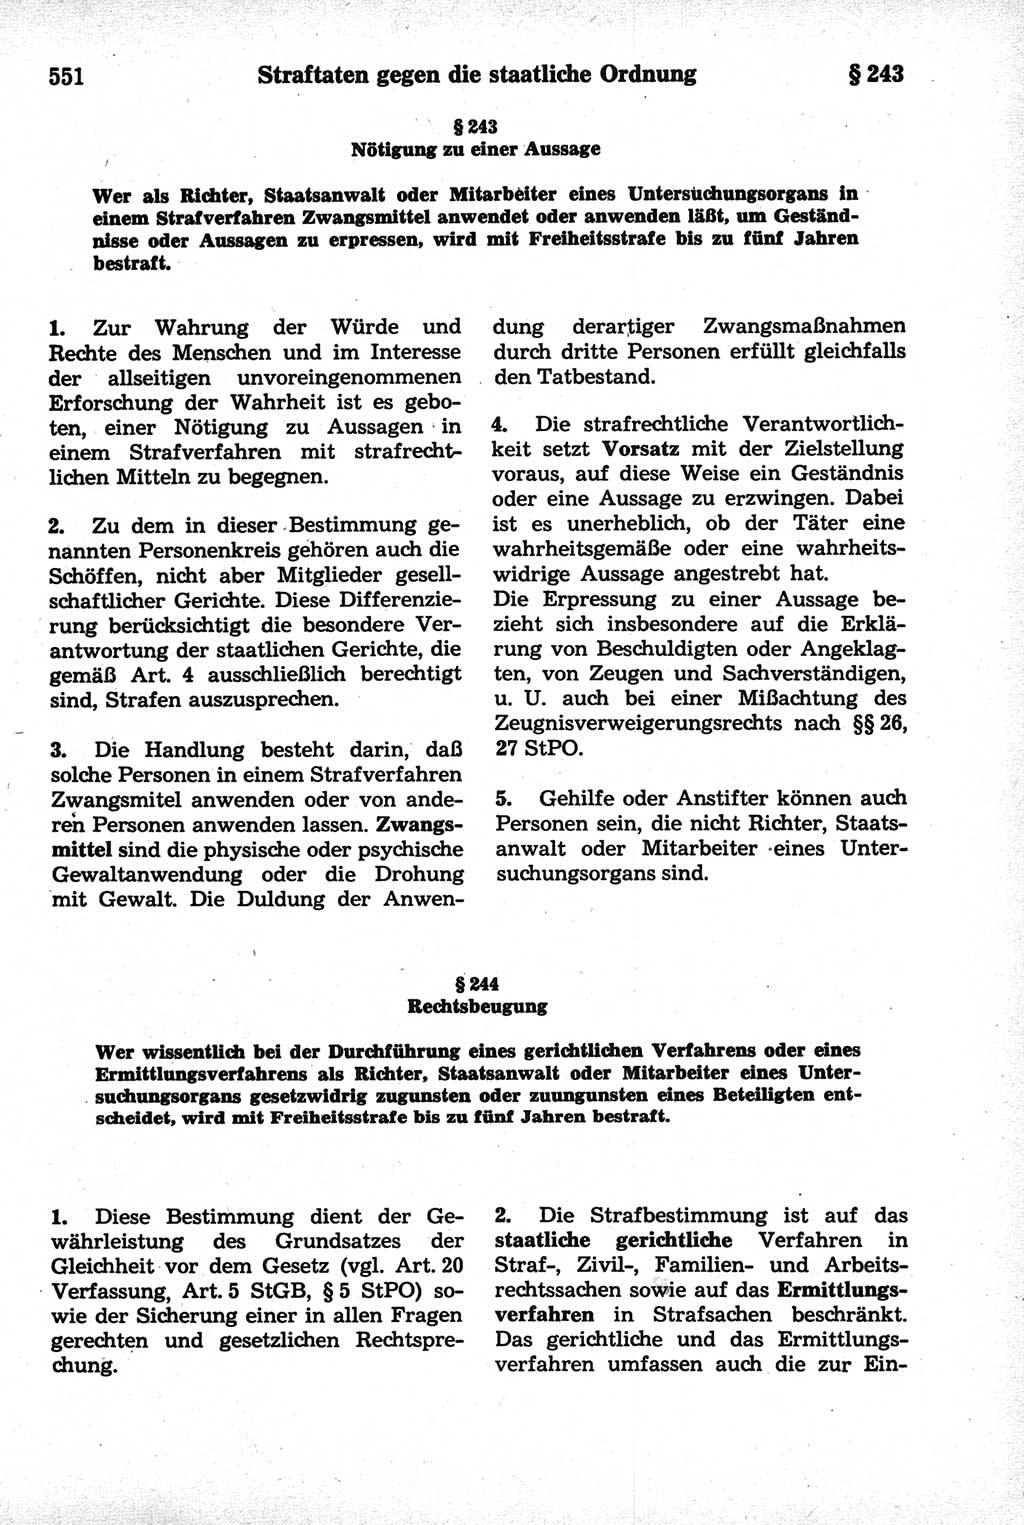 Strafrecht der Deutschen Demokratischen Republik (DDR), Kommentar zum Strafgesetzbuch (StGB) 1981, Seite 551 (Strafr. DDR Komm. StGB 1981, S. 551)